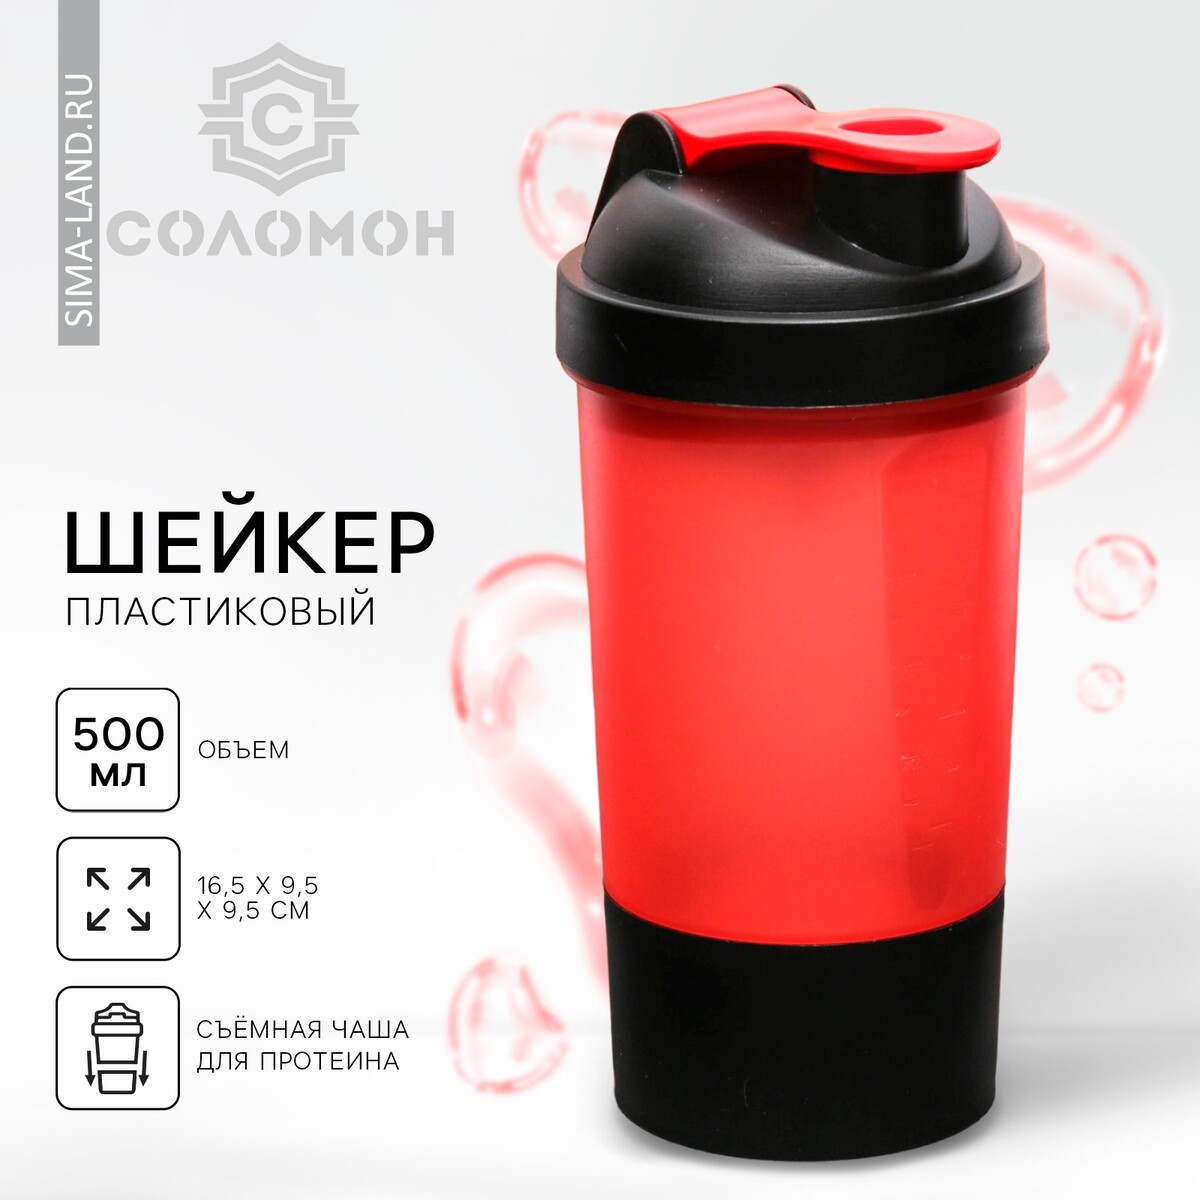 Шейкер спортивный с чашей под протеин, красно-черный, 500 мл шейкер спортивный